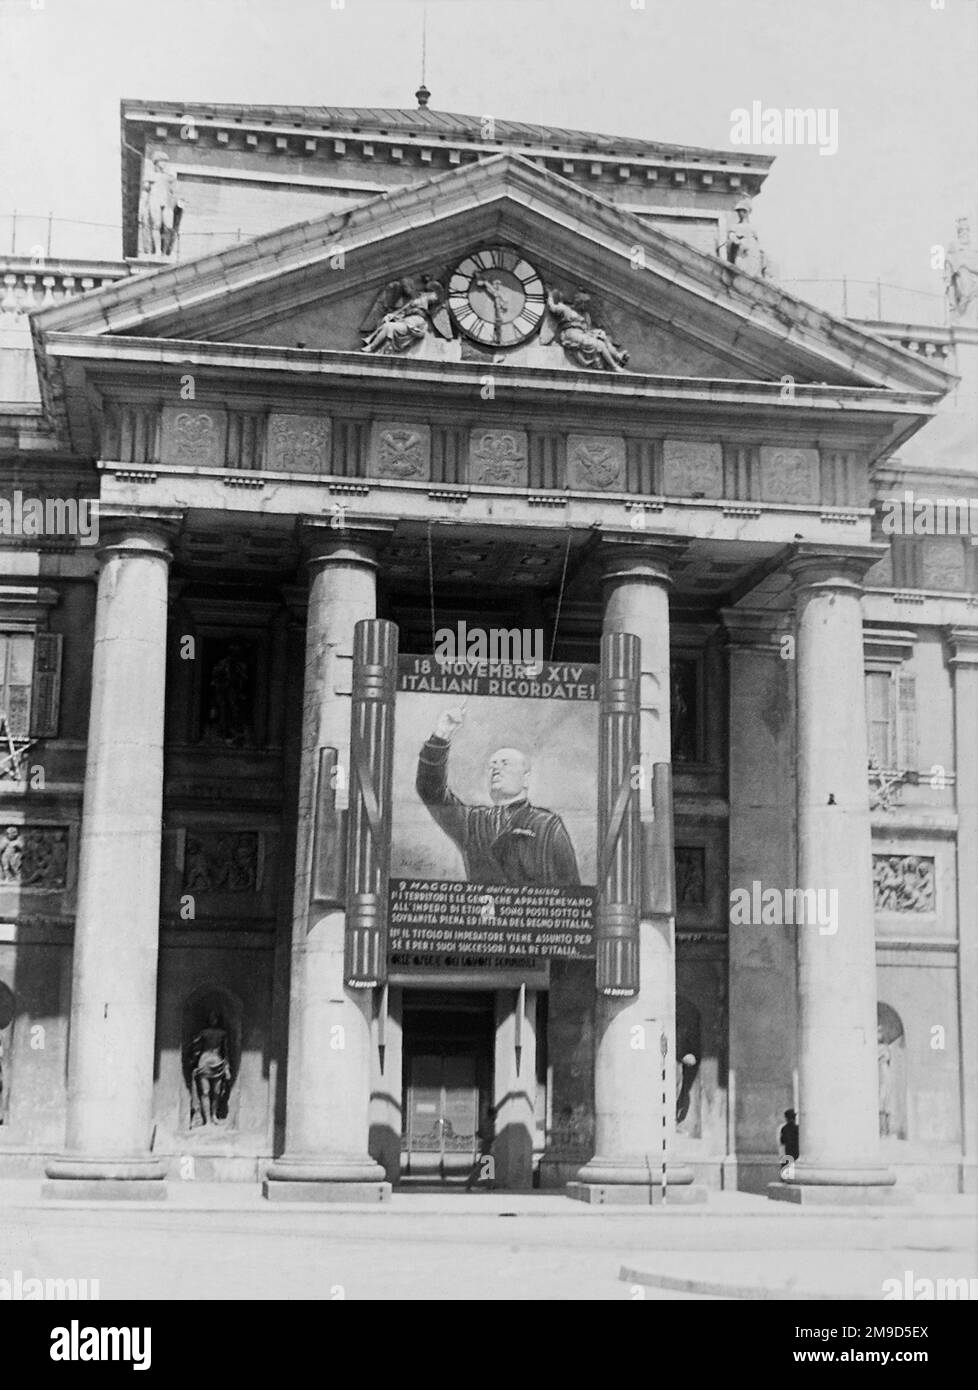 1936 , 27 . Mai , TRIEST , ITALIEN : Italienische faschistische PROPAGANDA , DIE GIGANTISCHE Porträtvergrößerung DES BENITO MUSSOLINI vor der Eingangstür DES BORSA MERCI ( Börsengebäude ) . Das Bild feierte die Mussolini-Rede vor der Menge , in der die italienische Eroberung Äthiopiens und die Proklamation des ITALIENISCHEN REICHES am 9 . Mai 1936 in Rom gefordert wurden . Unbekannter Fotograf. - GESCHICHTE- FOTO STORICHE - ROMA - FASCISMO - FASCISTA - FASCHISMUS - ITALIA - 30ER - '30 - ANNI TRENTA - XX. JAHRHUNDERT - NOVECENTO - PROPAGANDA - CATTIVO GUSTO - KITSCH - FASCIO LITTORIO - ARCHITETTURA - ARC Stockfoto